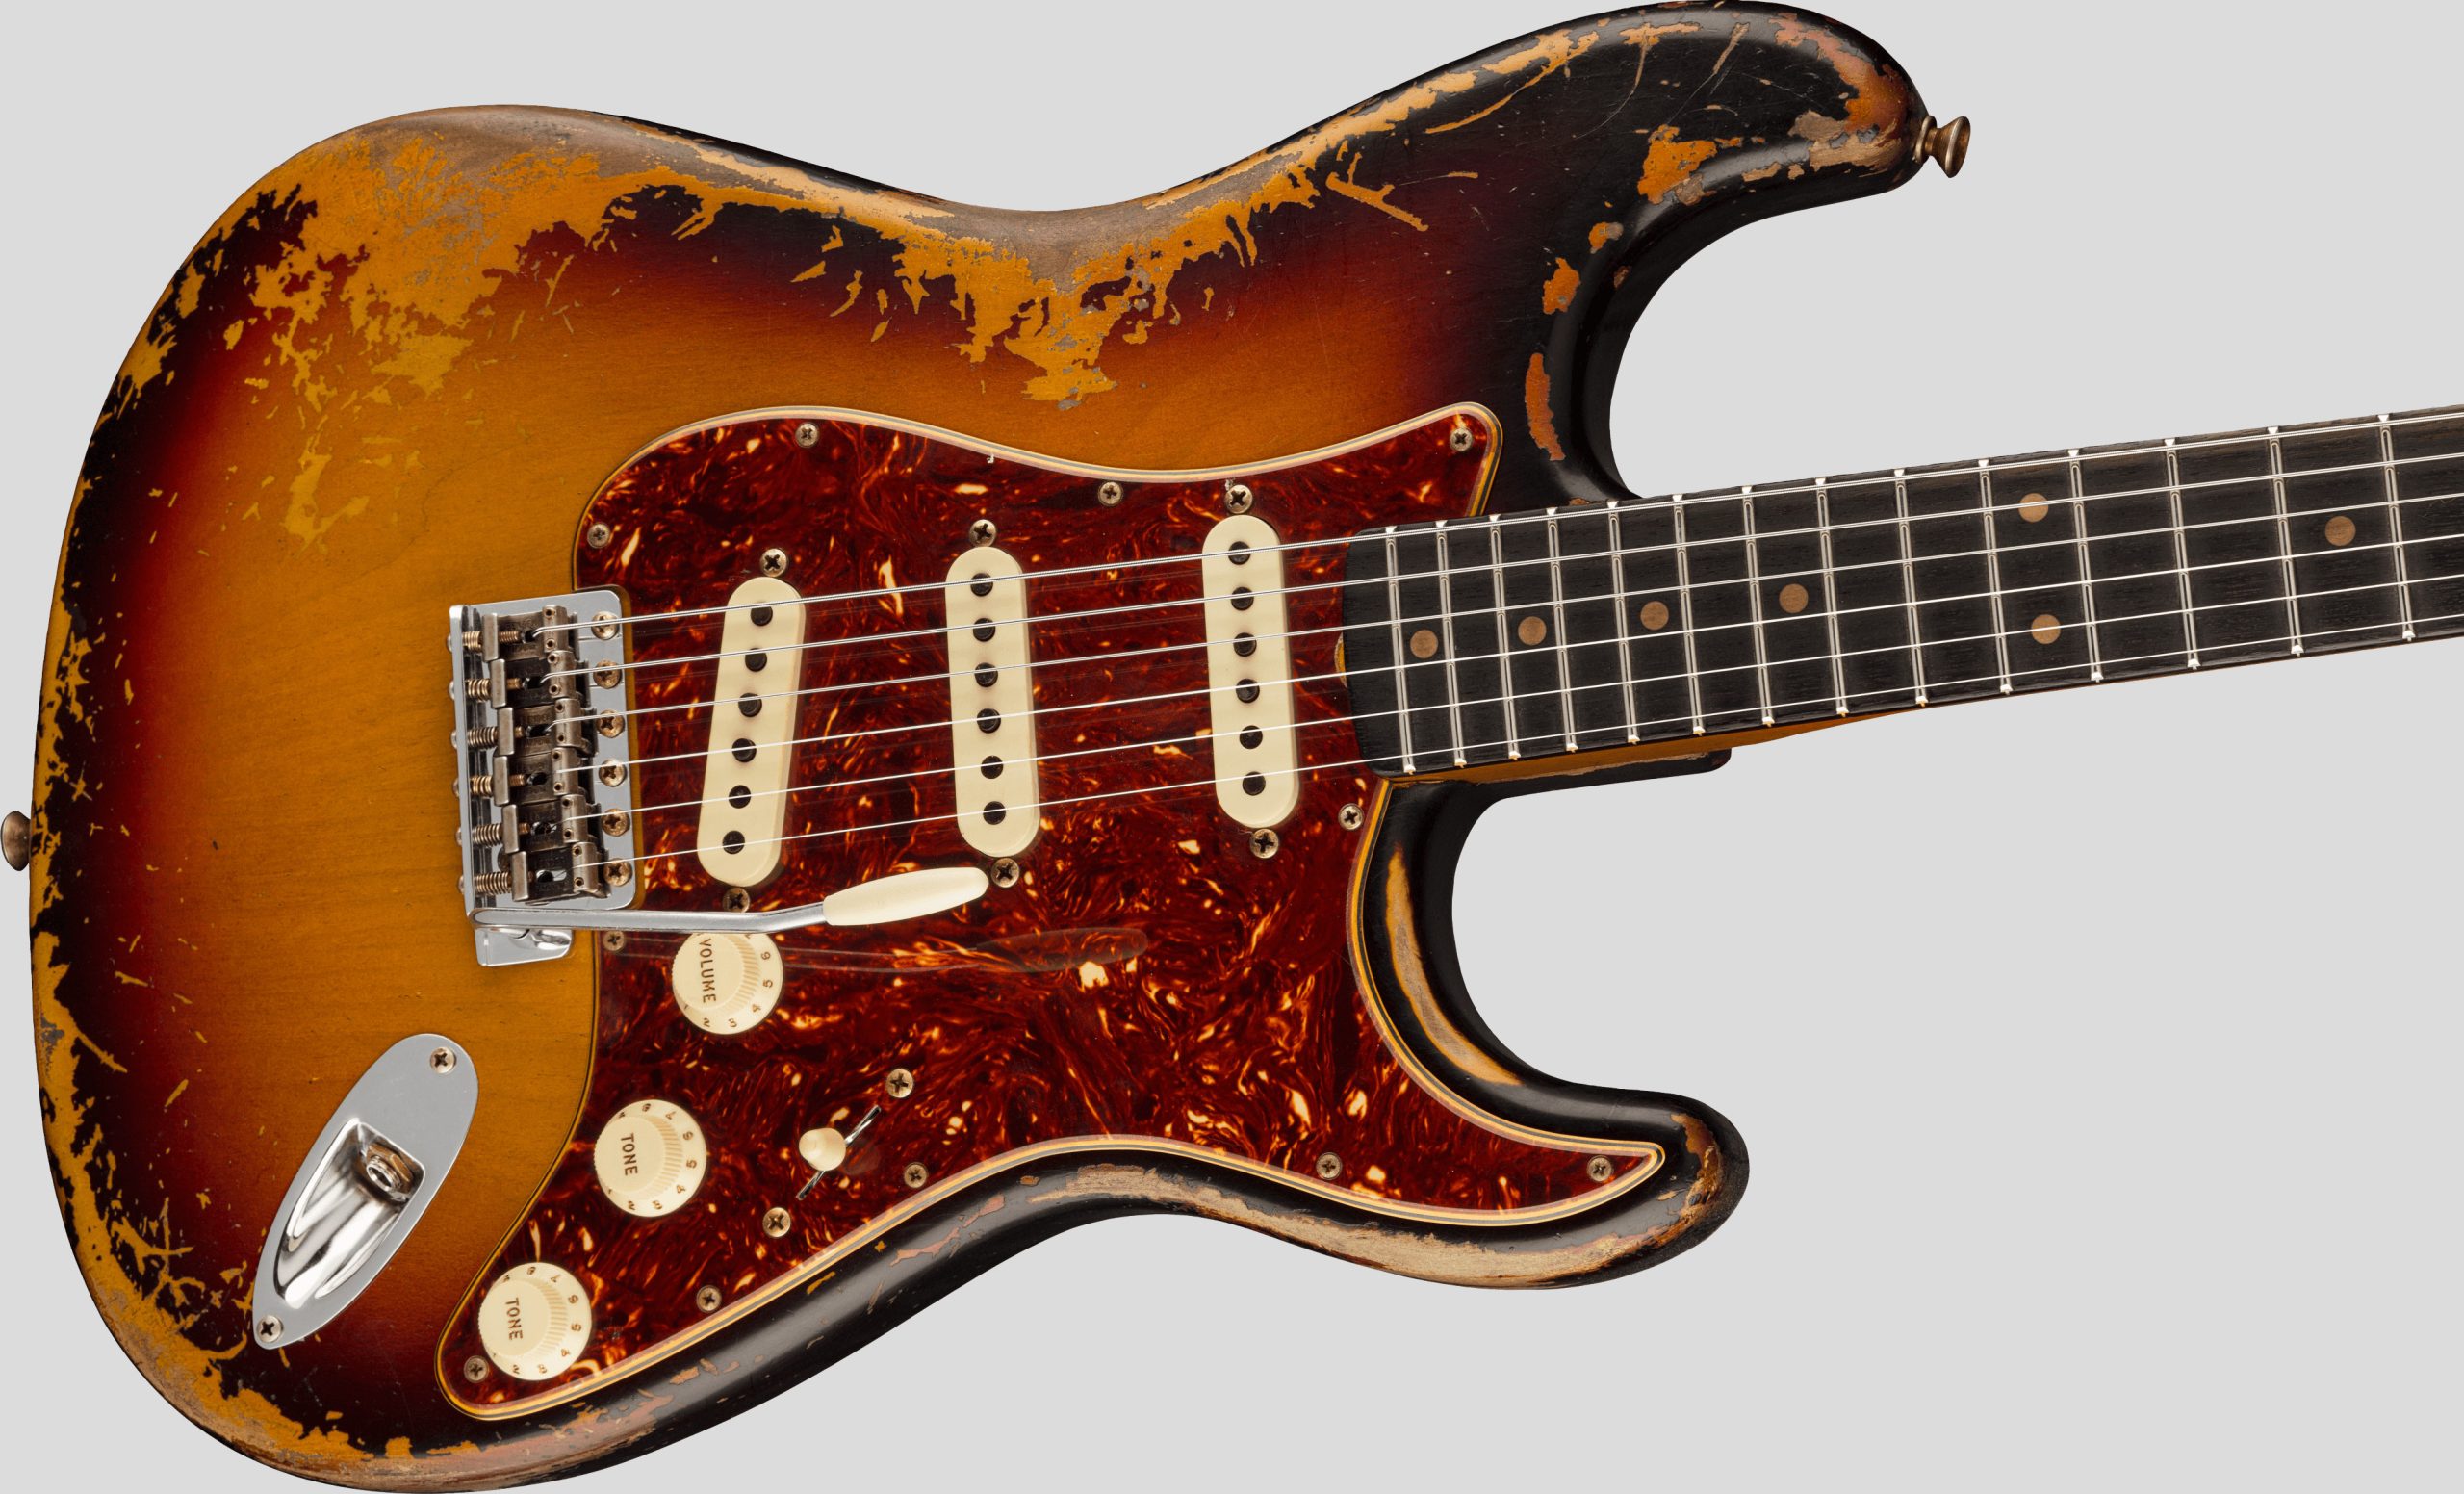 Fender Custom Shop Limited Edition Roasted 61 Stratocaster Aged 3-Color Sunburst SHR 3